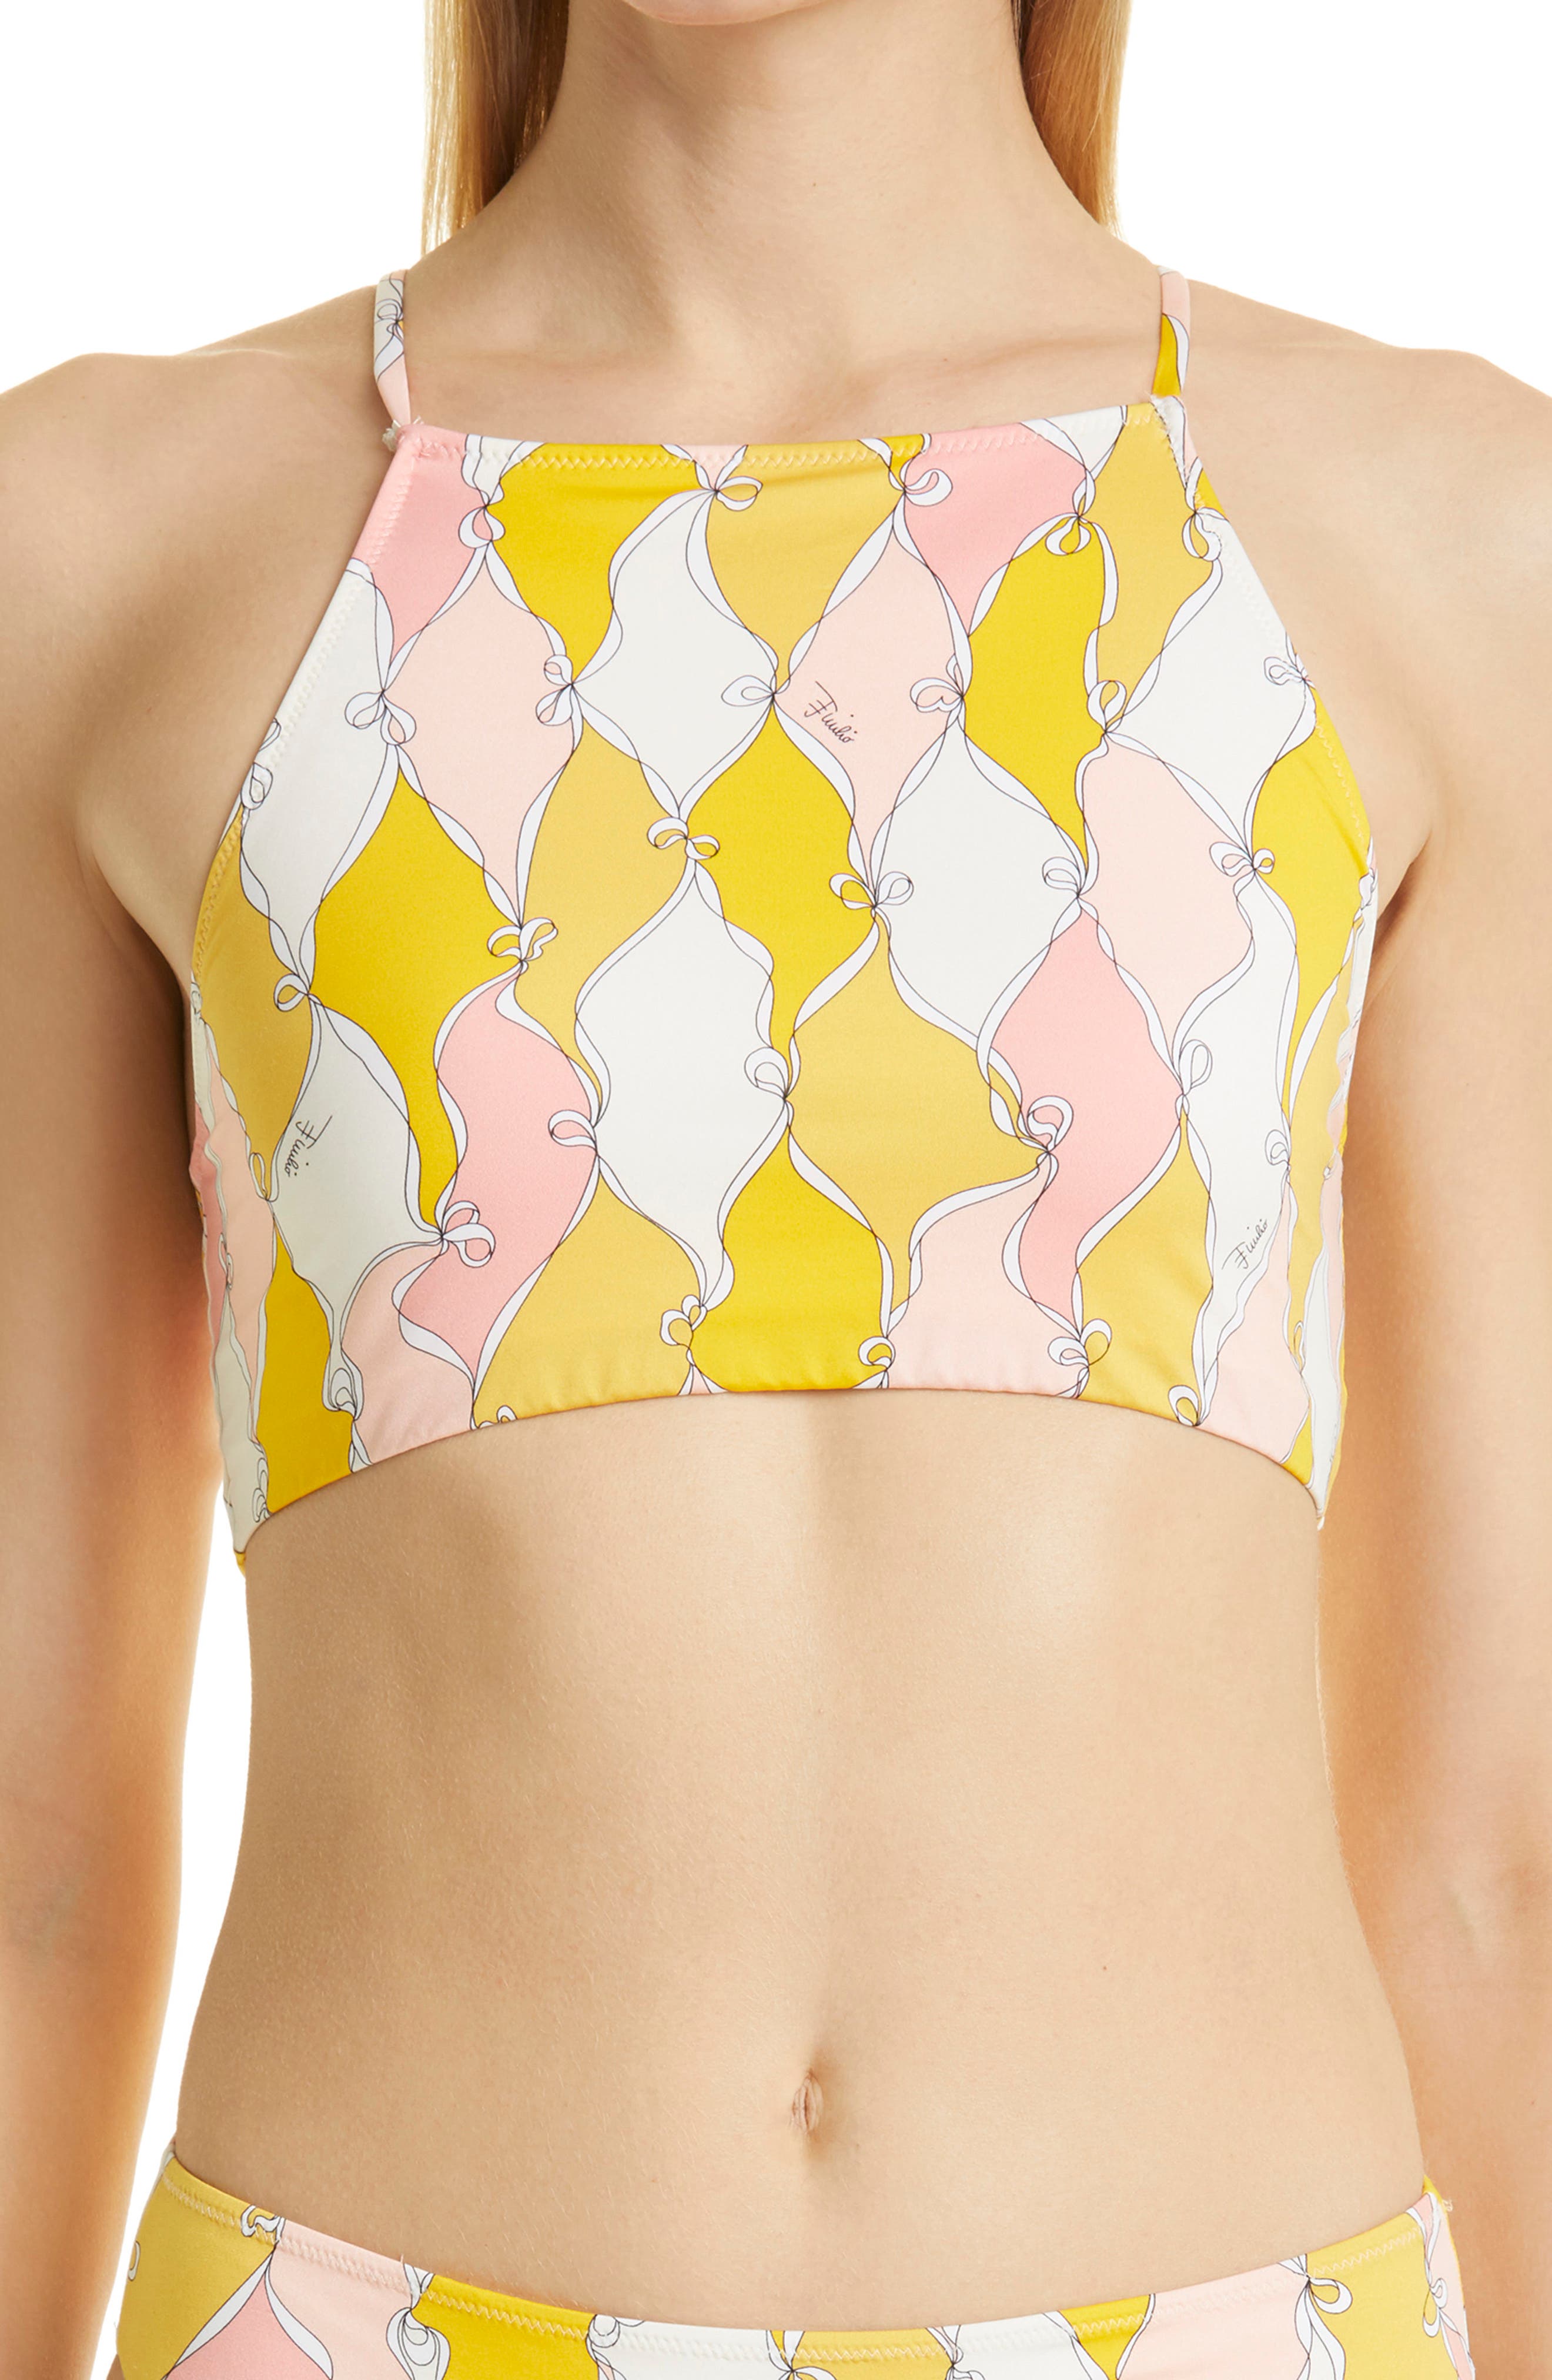 Emilio Pucci Losanghe Crop Bikini Top in Giallo Rosa at Nordstrom, Size 4 Us